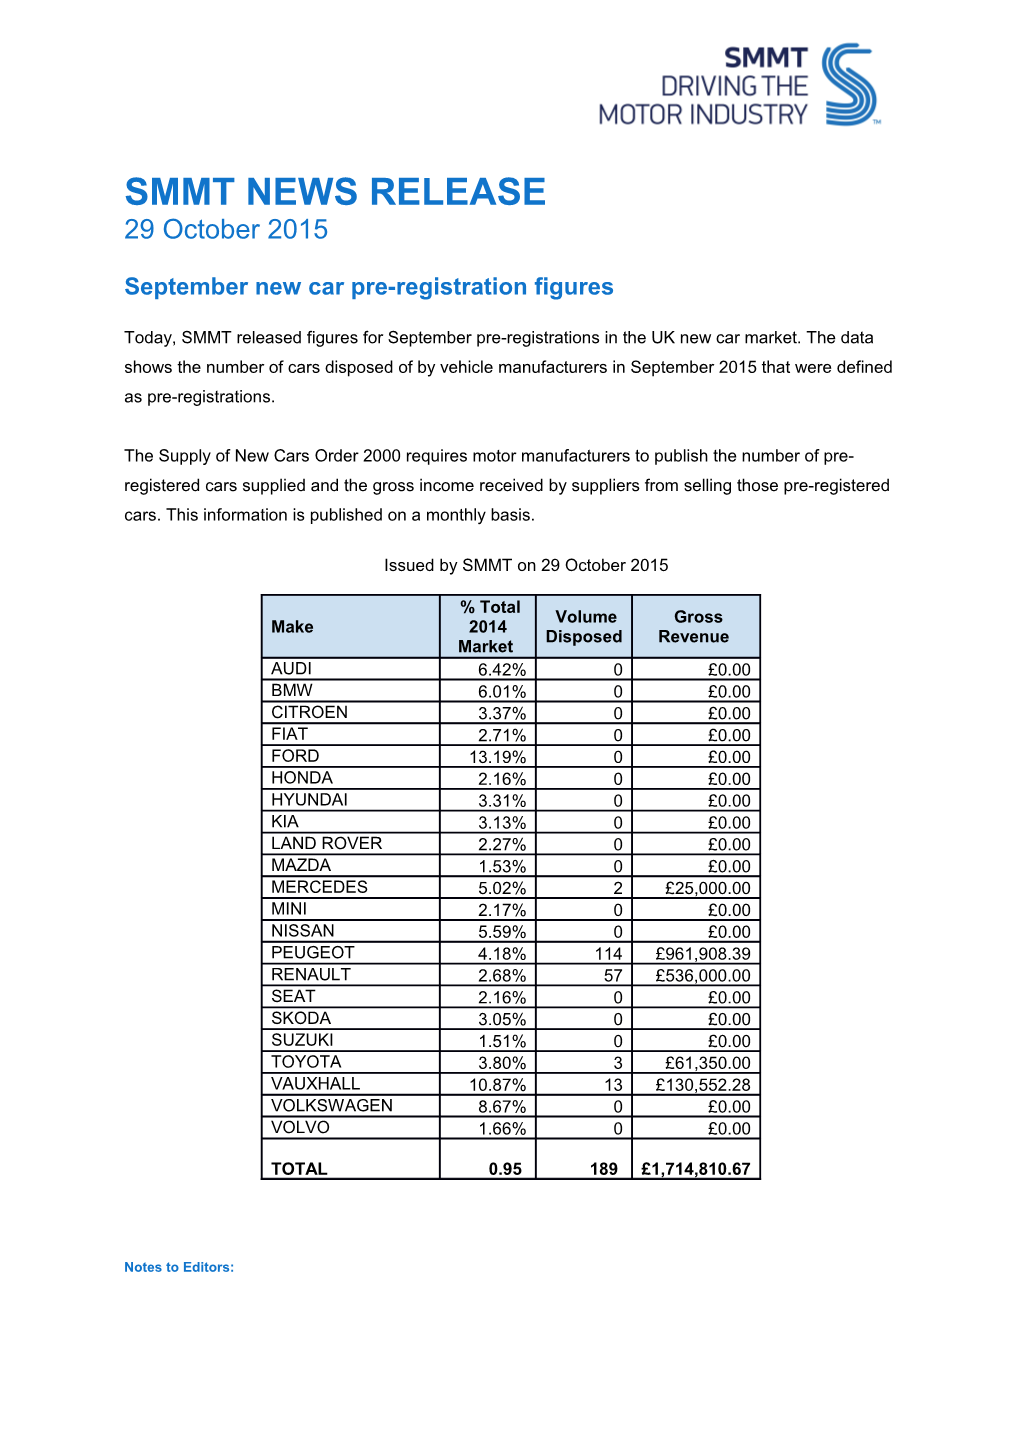 Septembernew Car Pre-Registration Figures